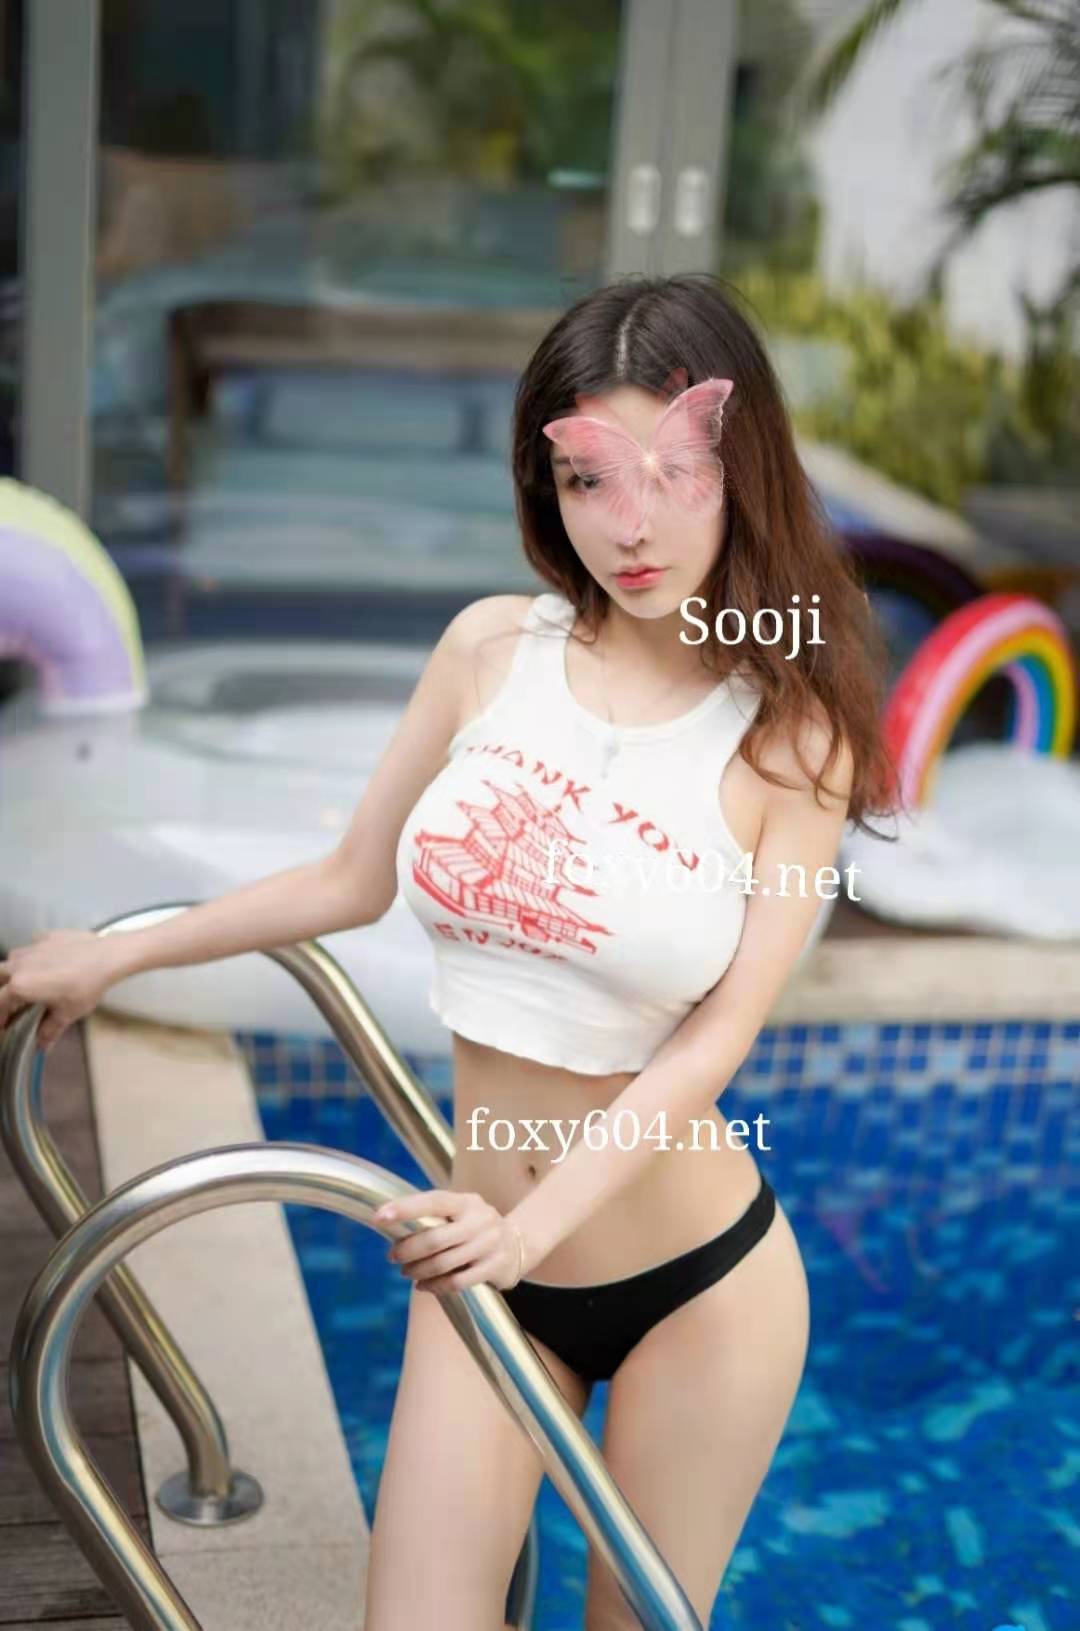 <b>Sooji</b>